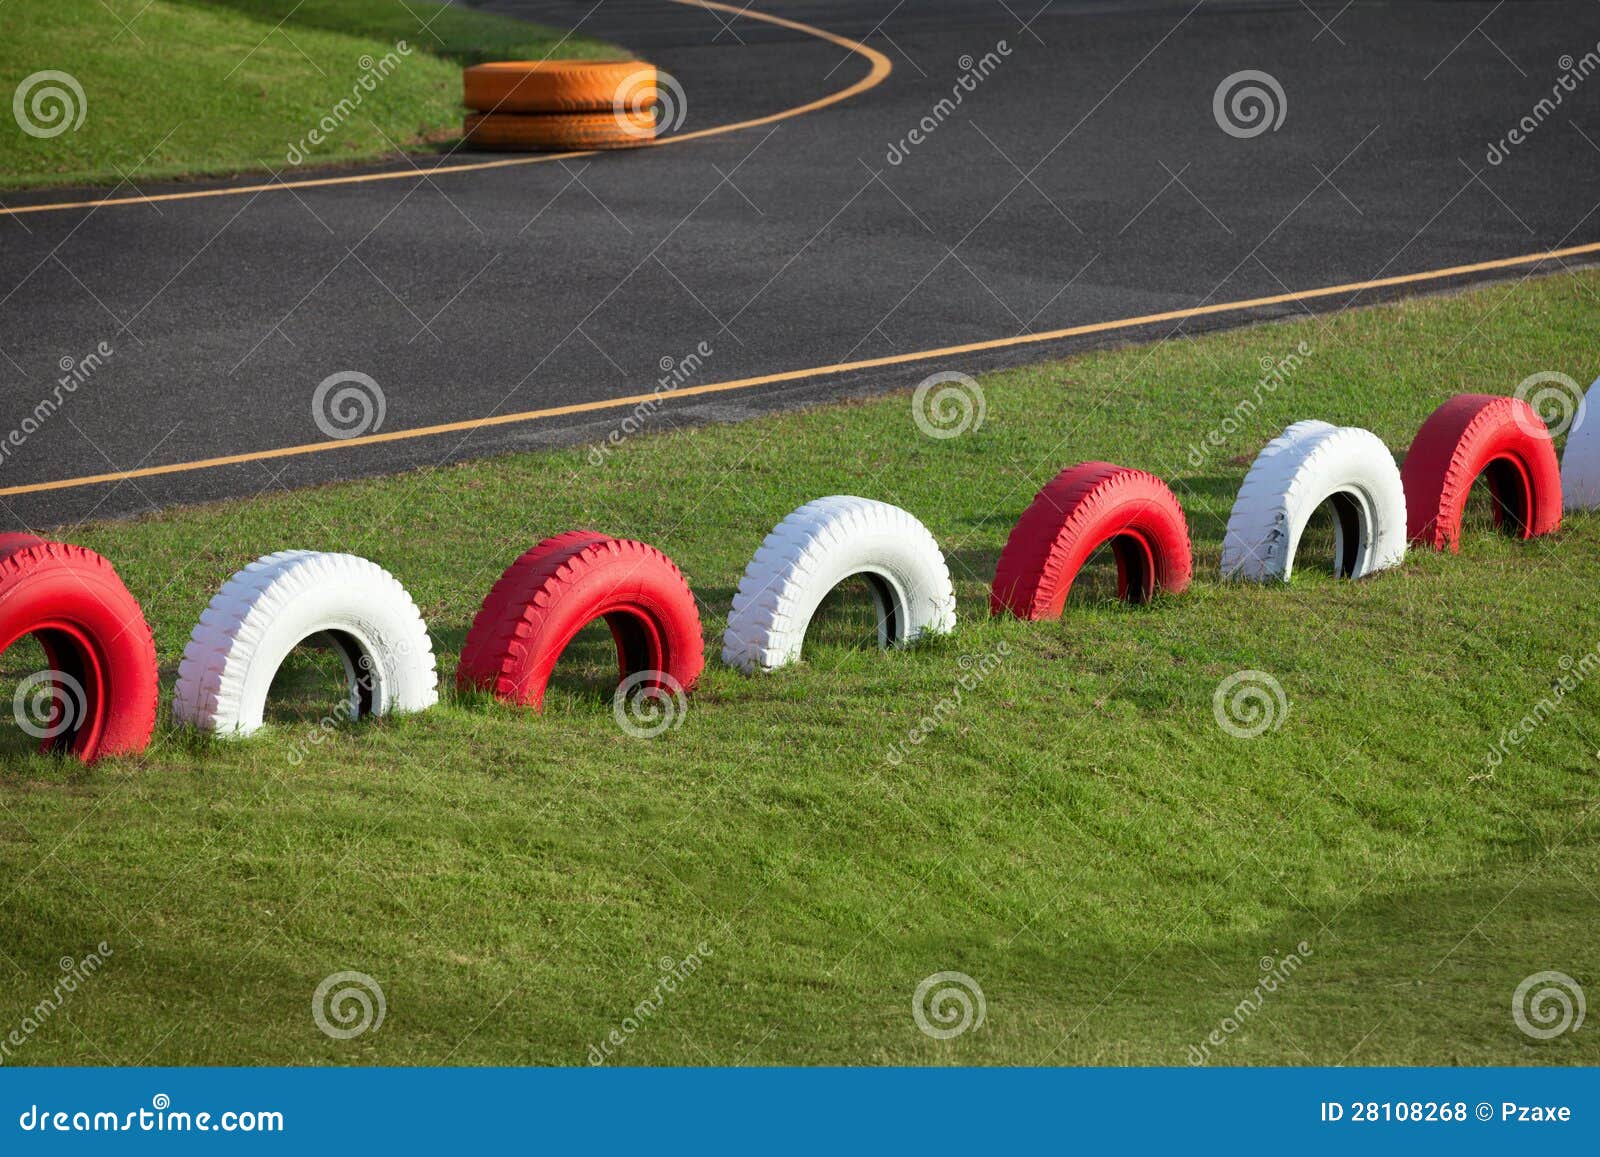 racing track for karting